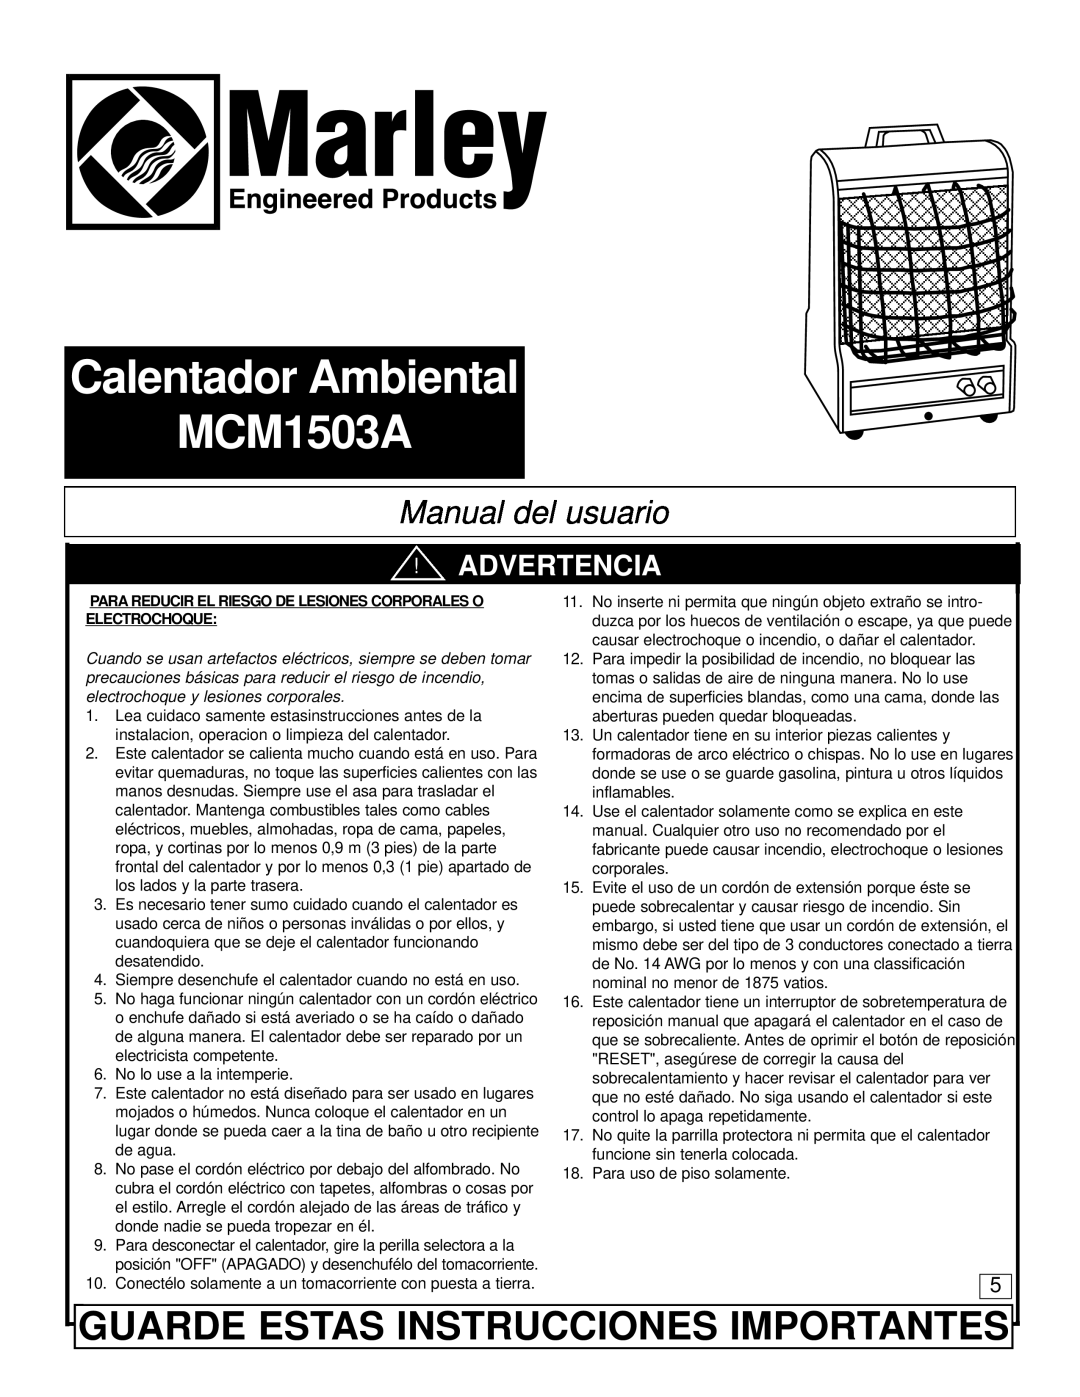 Marley Engineered Products Calentador Ambiental MCM1503A, Guarde Estas Instrucciones Importantes, Manual del usuario 